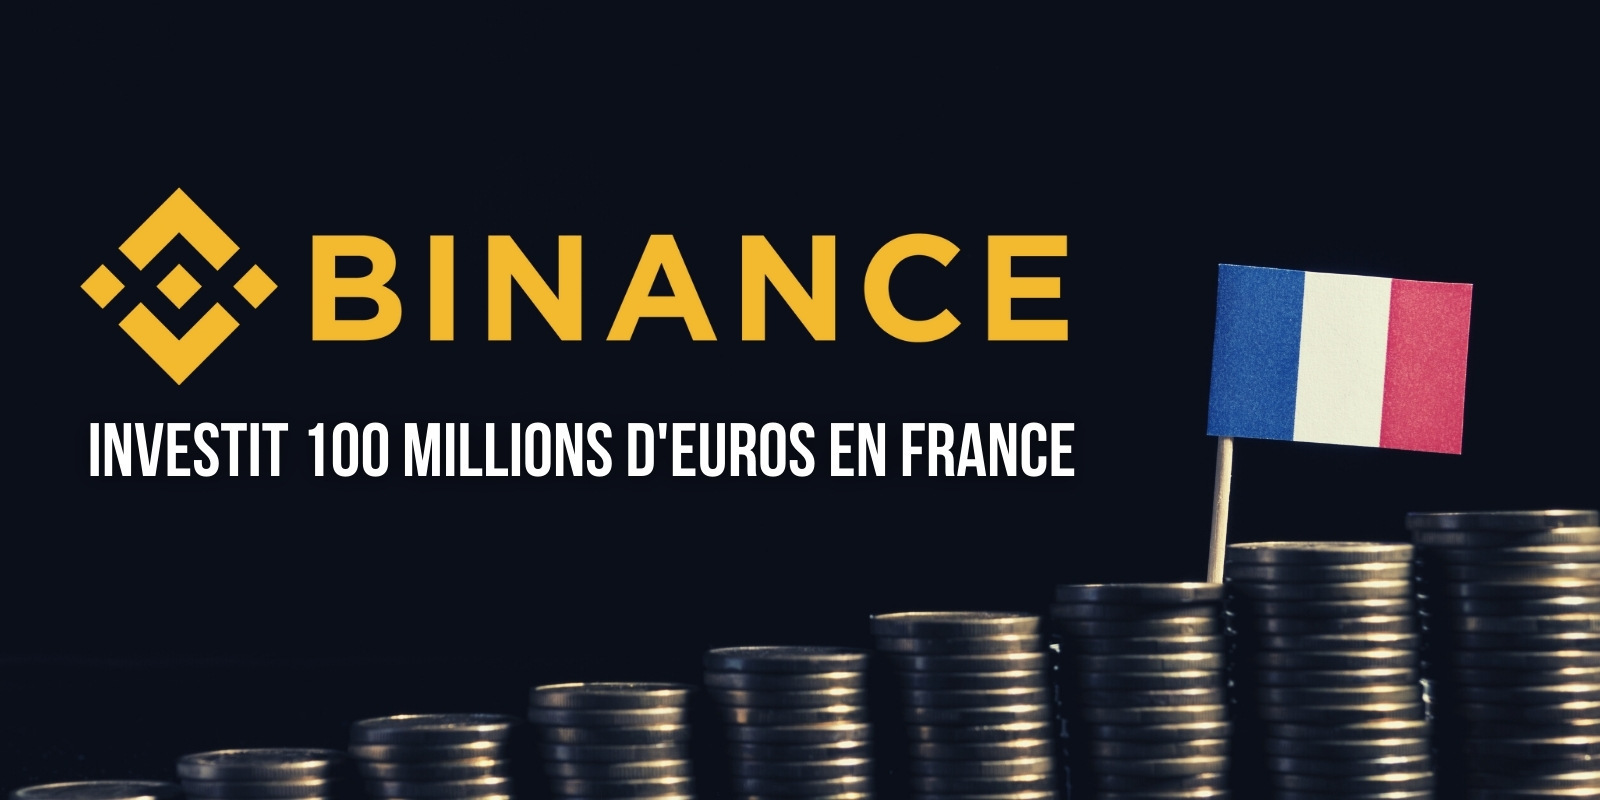 Binance investit 100 millions d'euros en France pour le développement de l'écosystème des cryptomonnaies